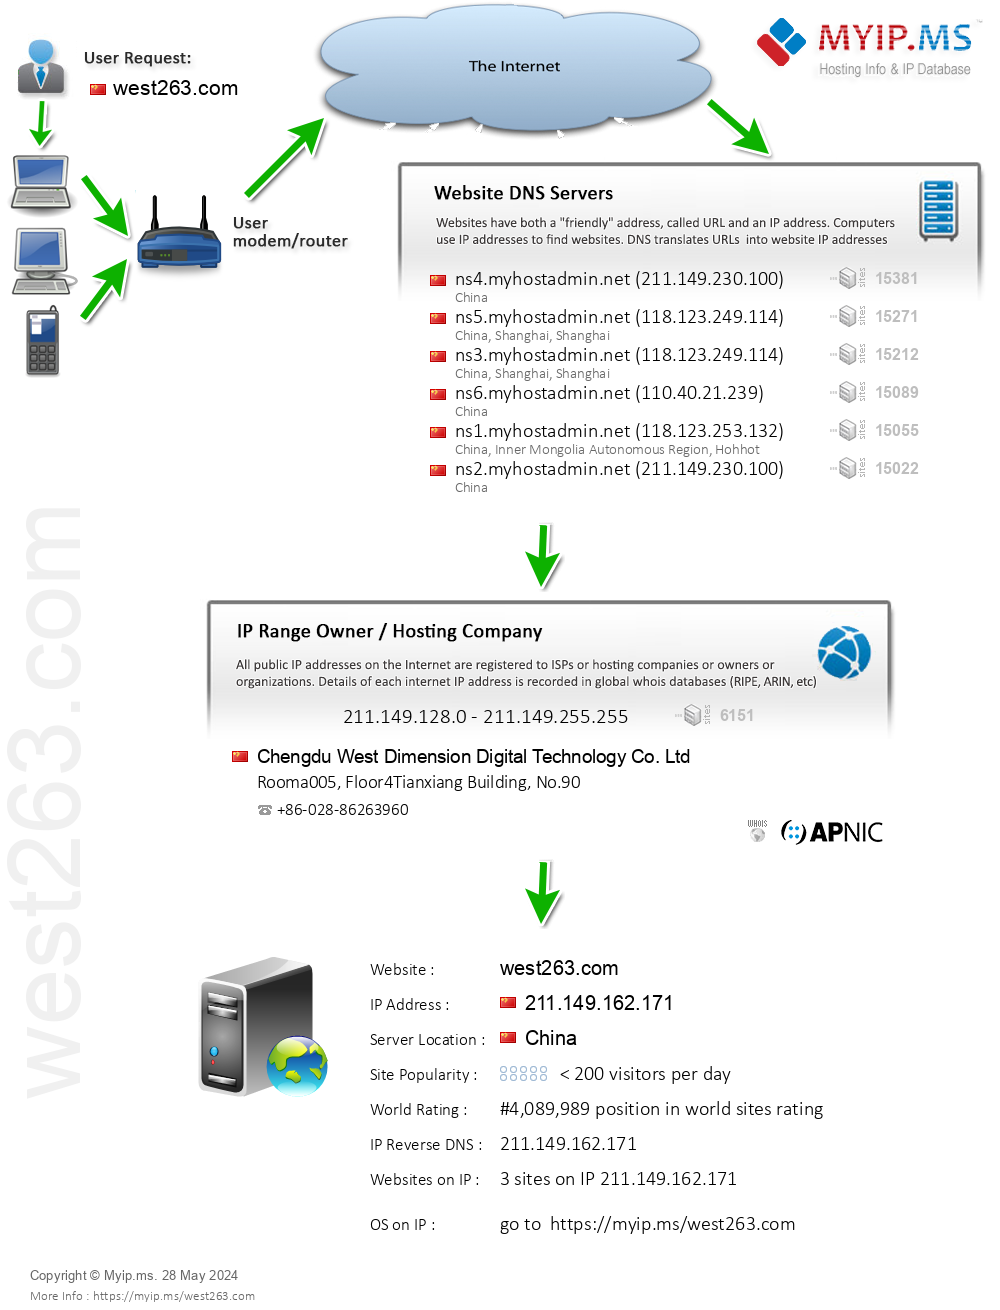 West263.com - Website Hosting Visual IP Diagram